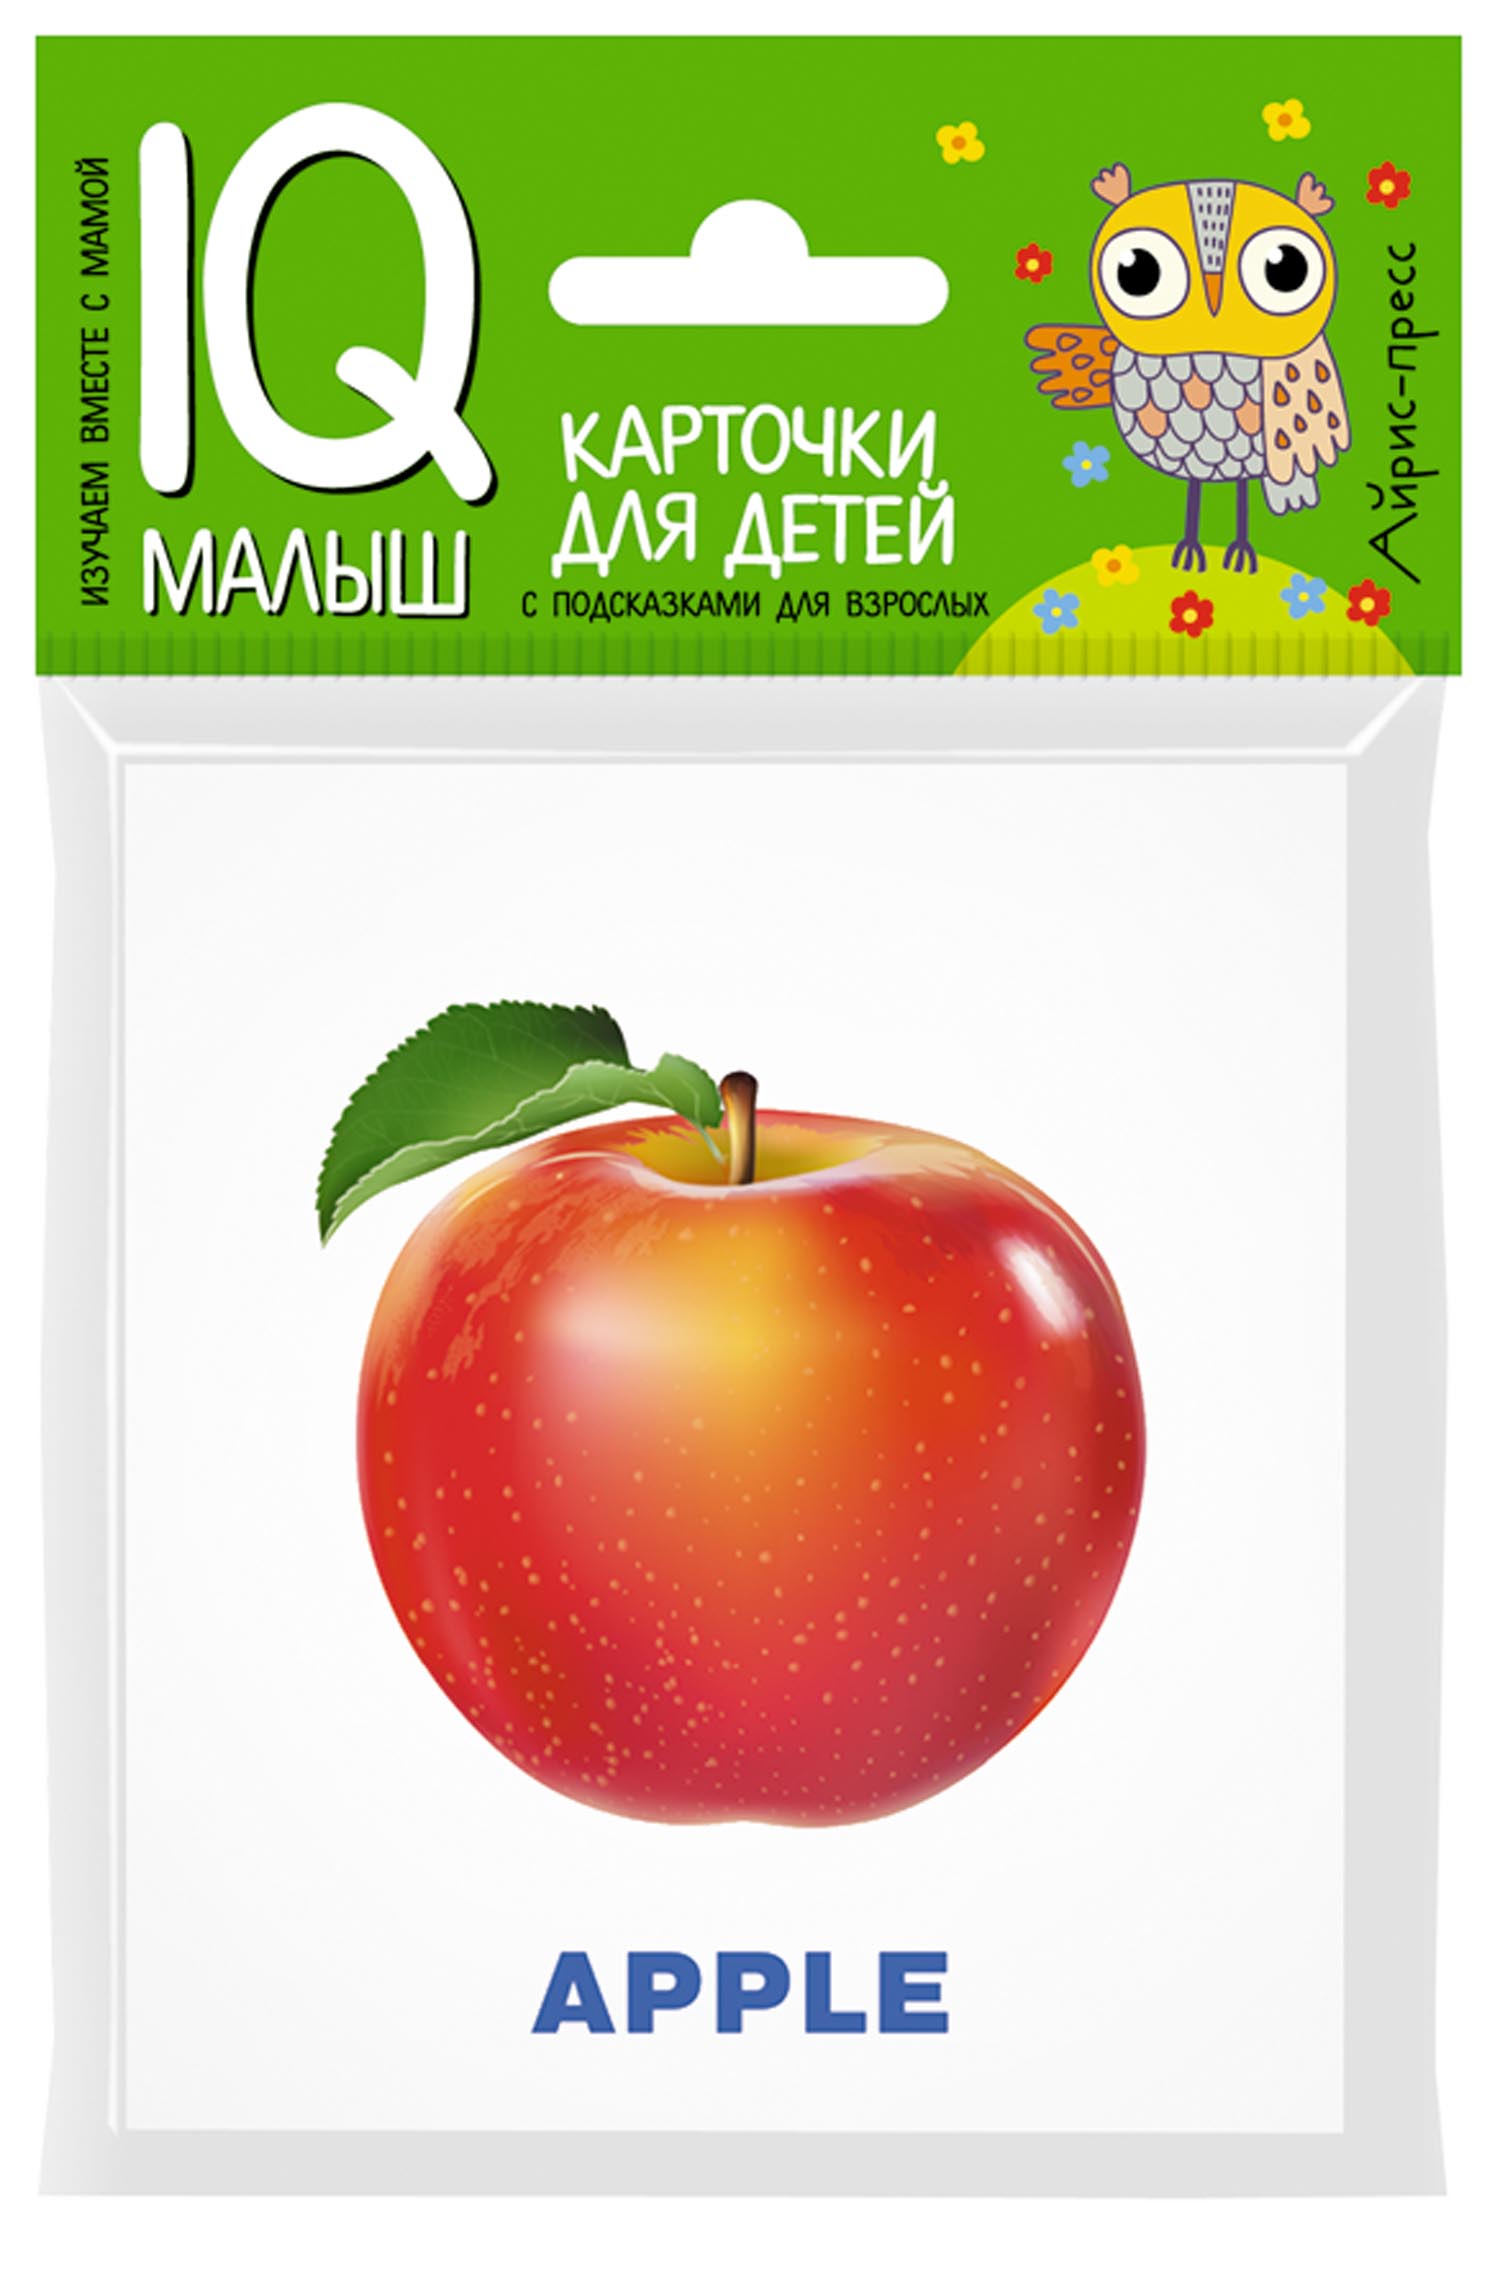 Картинки фруктов для детей   цветные скачать бесплатно (1)